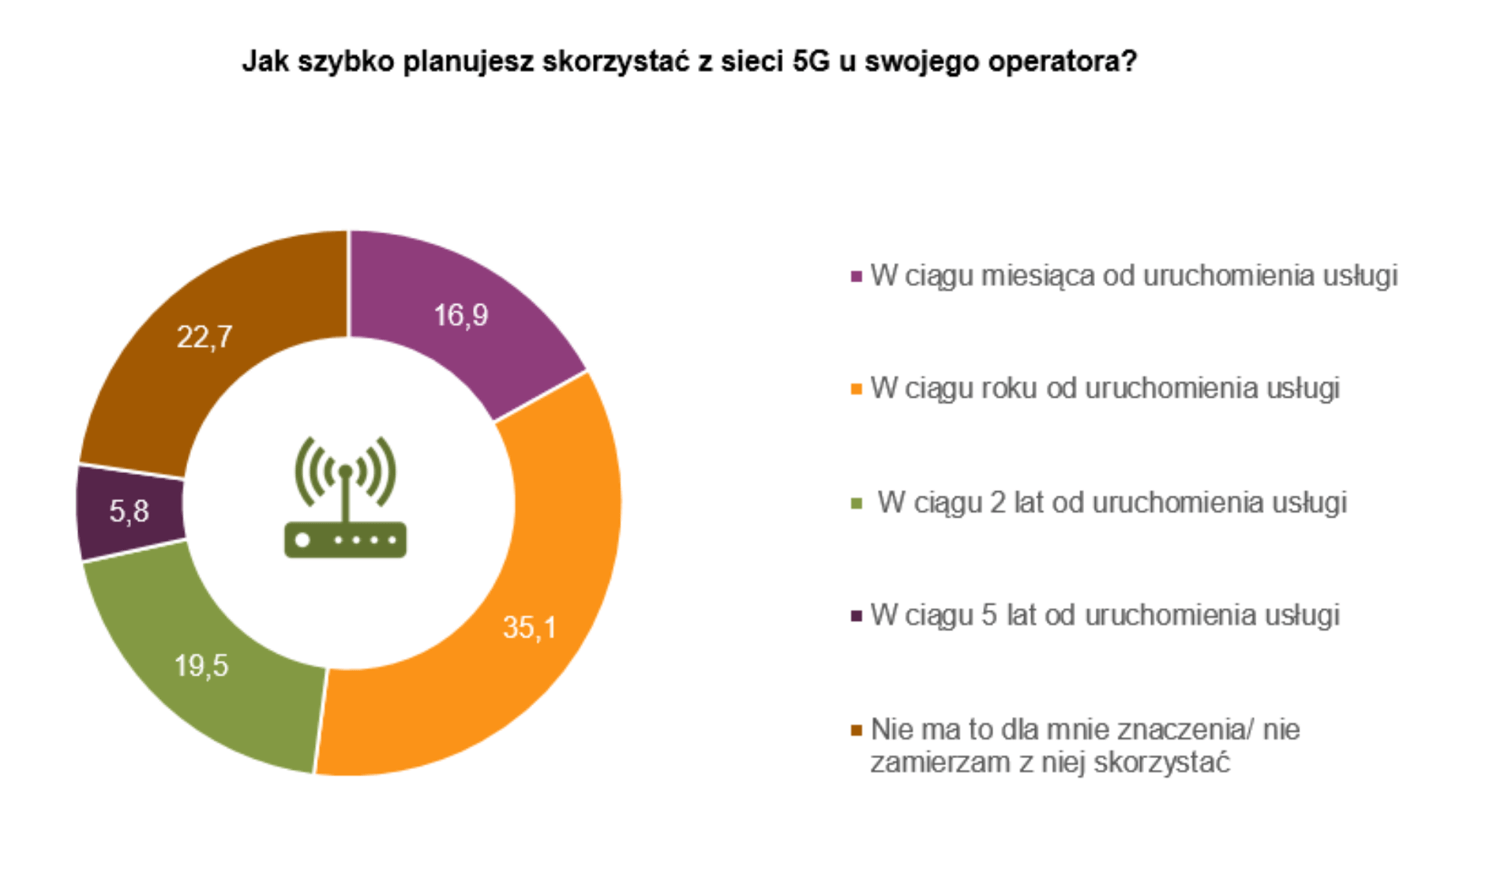 Jak szybko planujesz skorzystać z sieci 5G u swojego operatora? (Polska, 2020)